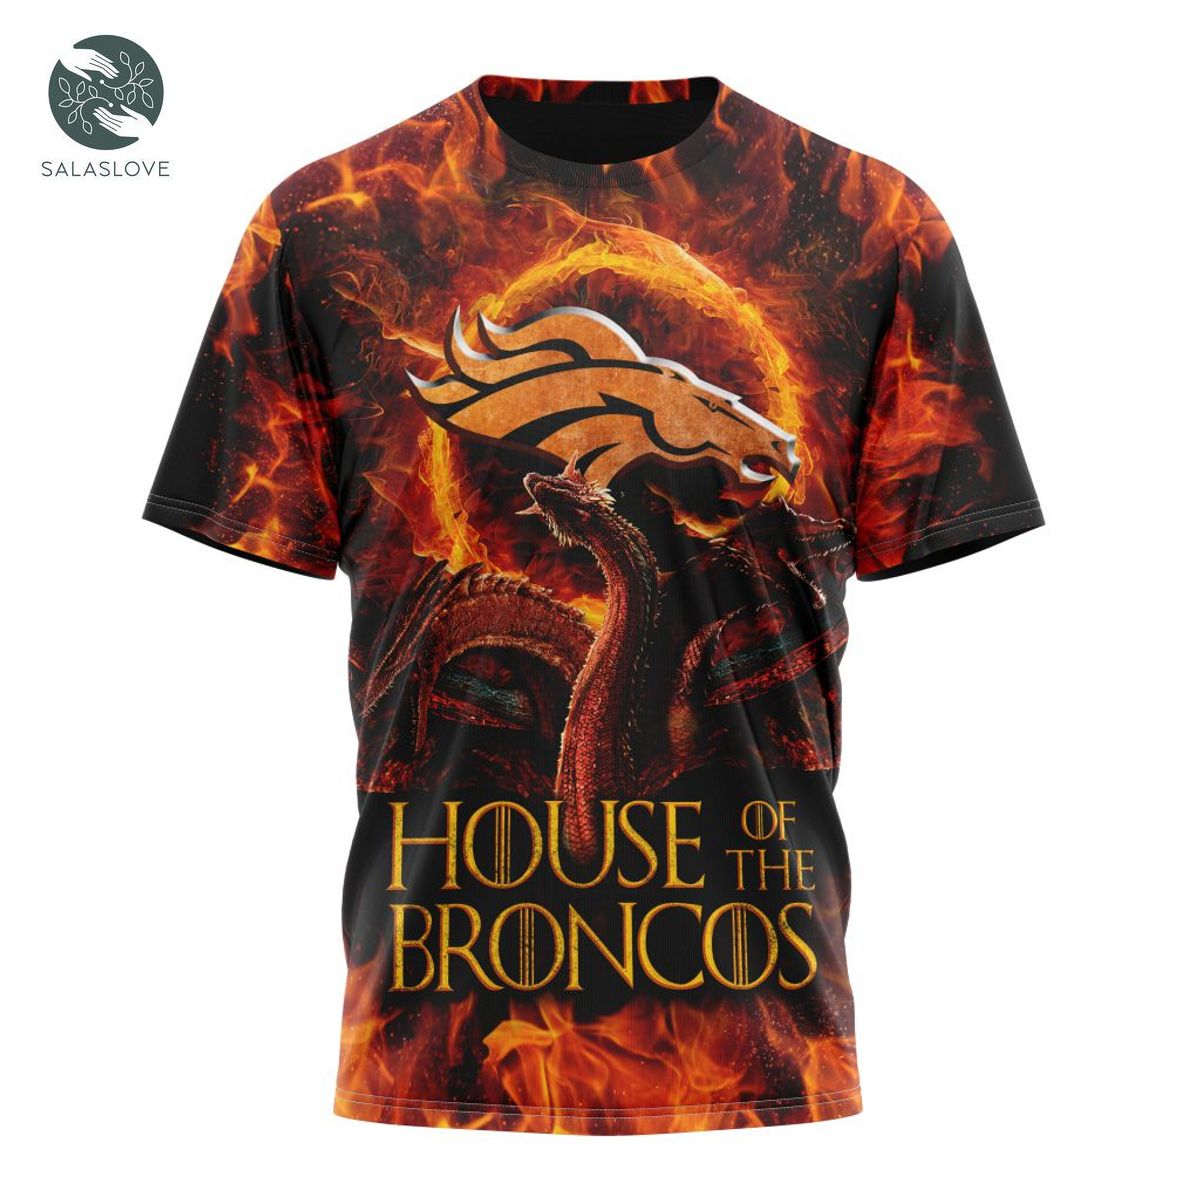 NFL Denver Broncos GAME OF THRONES – HOUSE OF THE BRONCOS Shirt